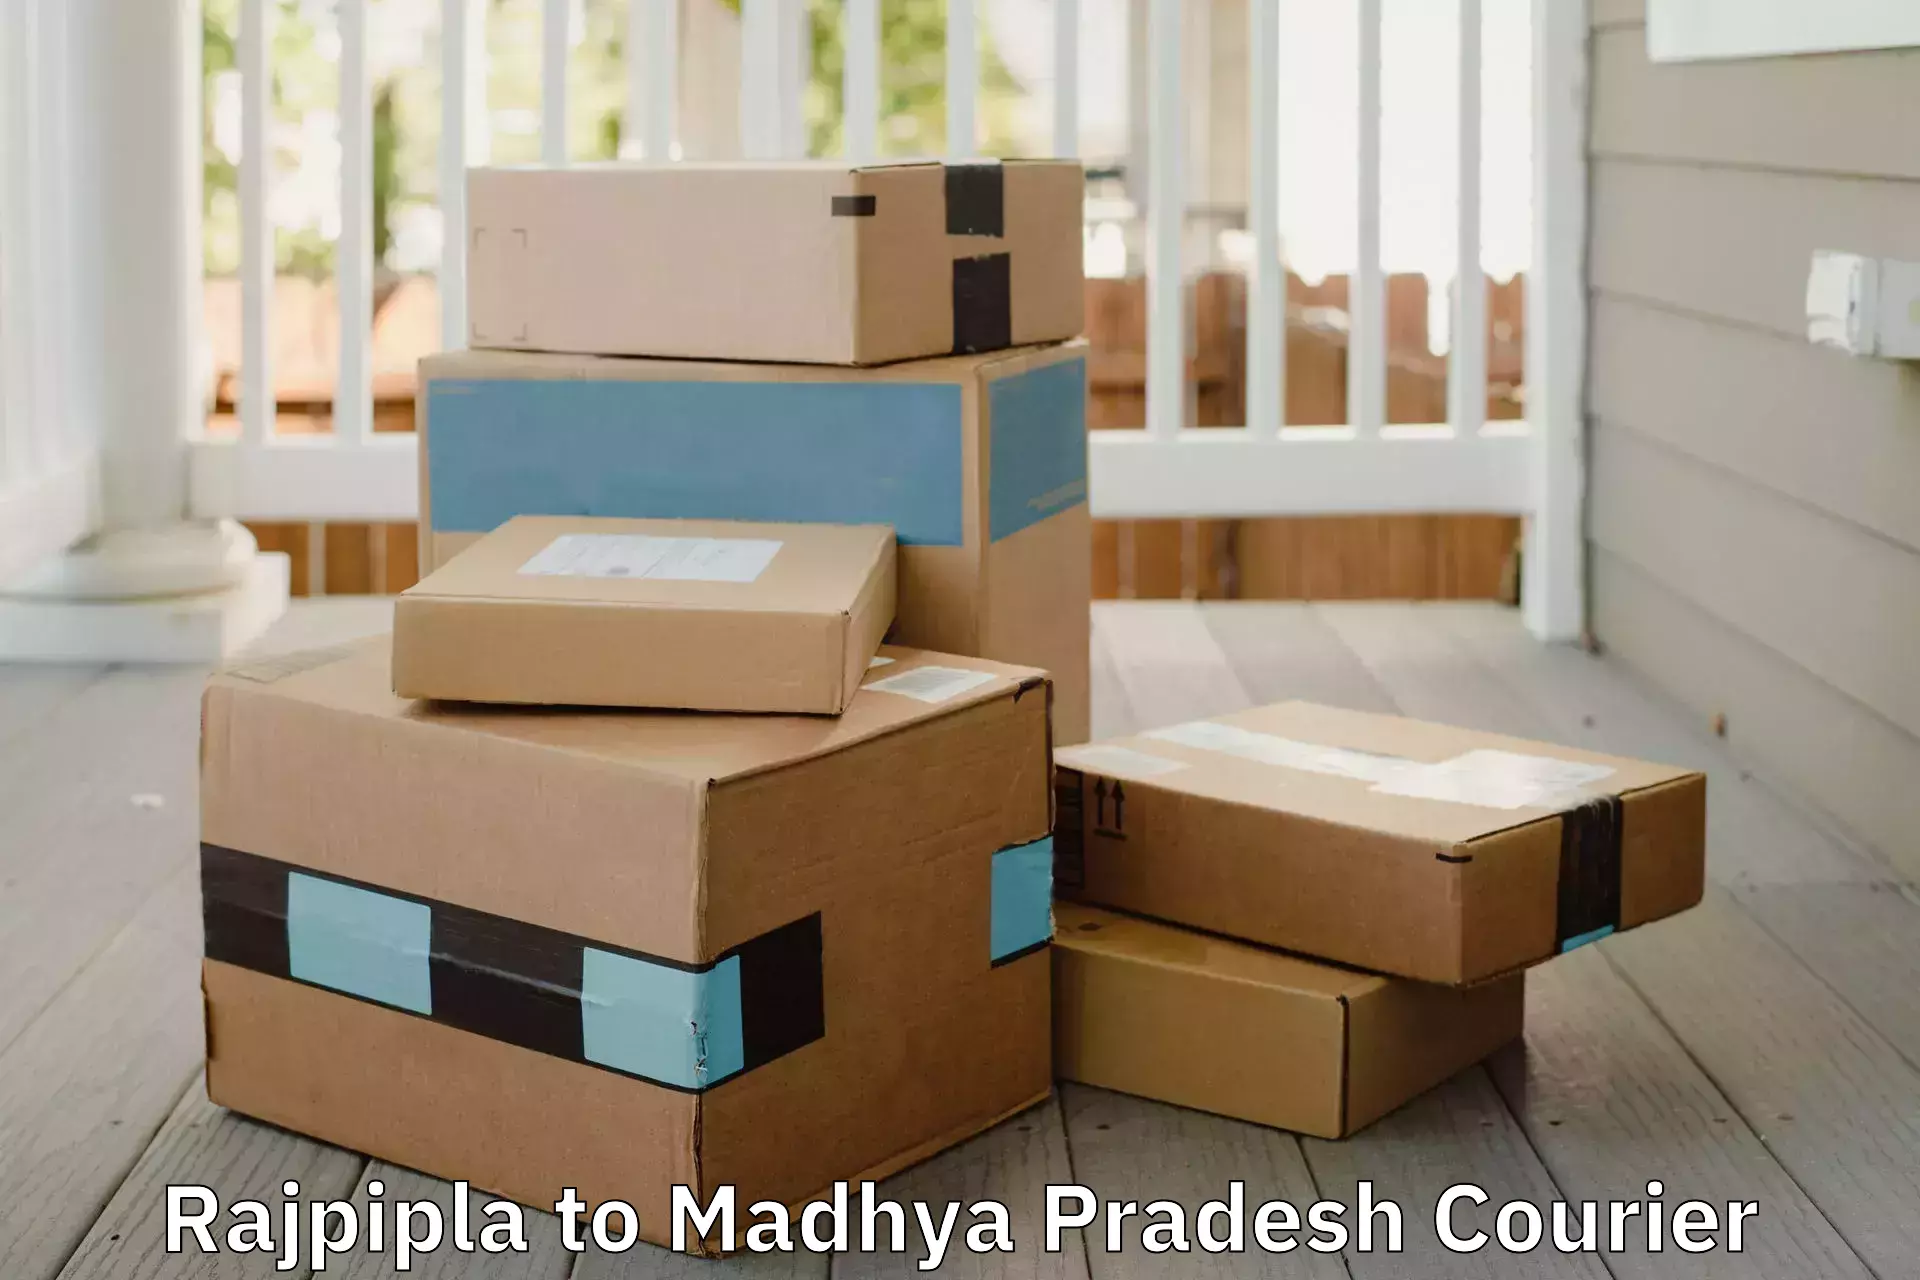 Door-to-door relocation services Rajpipla to IIIT Bhopal